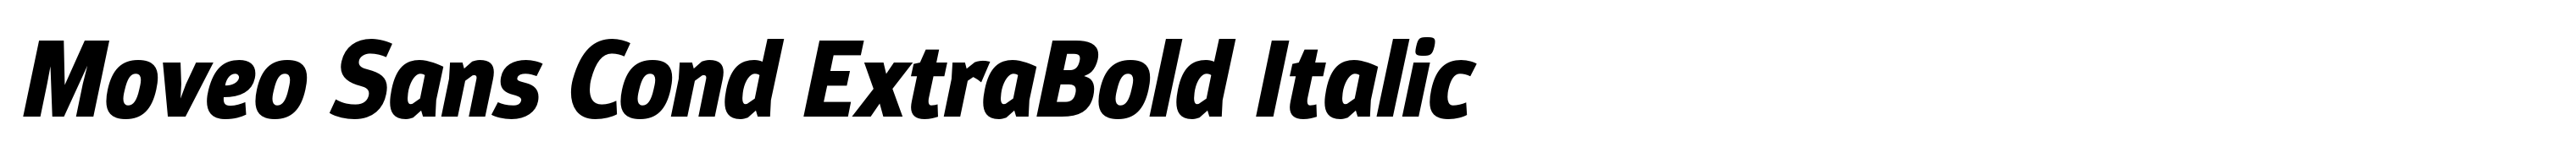 Moveo Sans Cond ExtraBold Italic